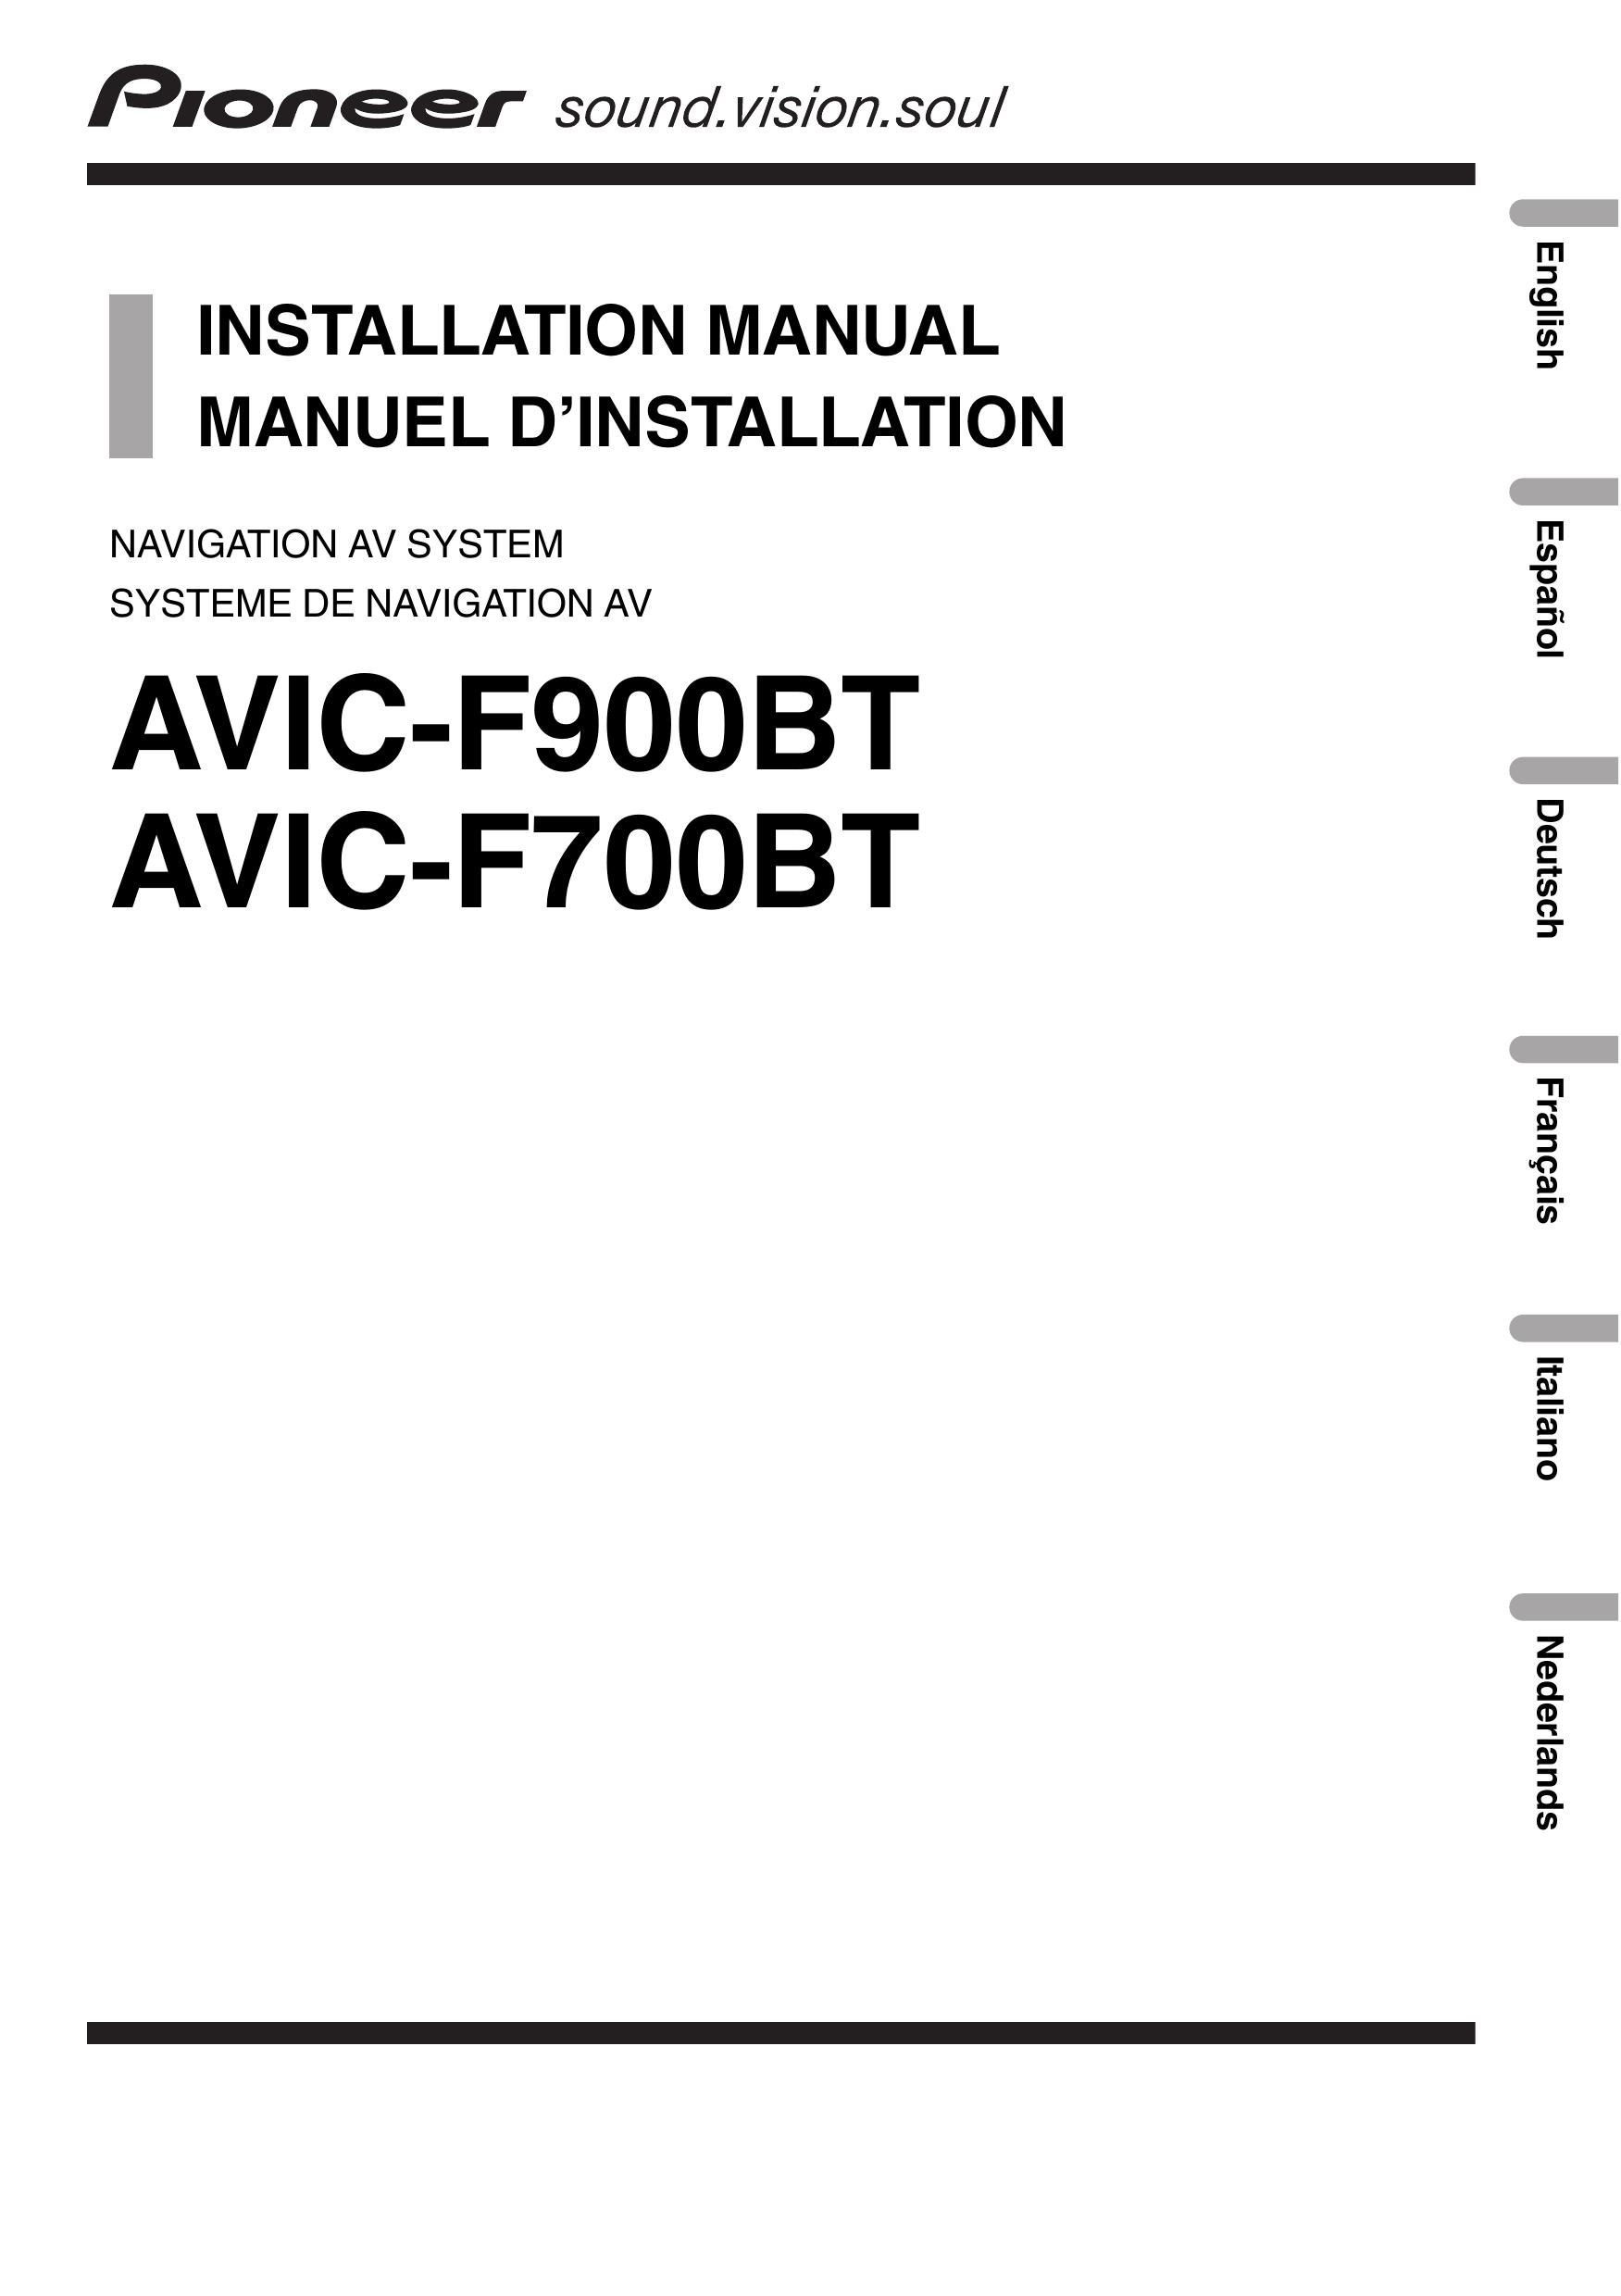 Pioneer AVIC-F900BT Marine GPS System User Manual